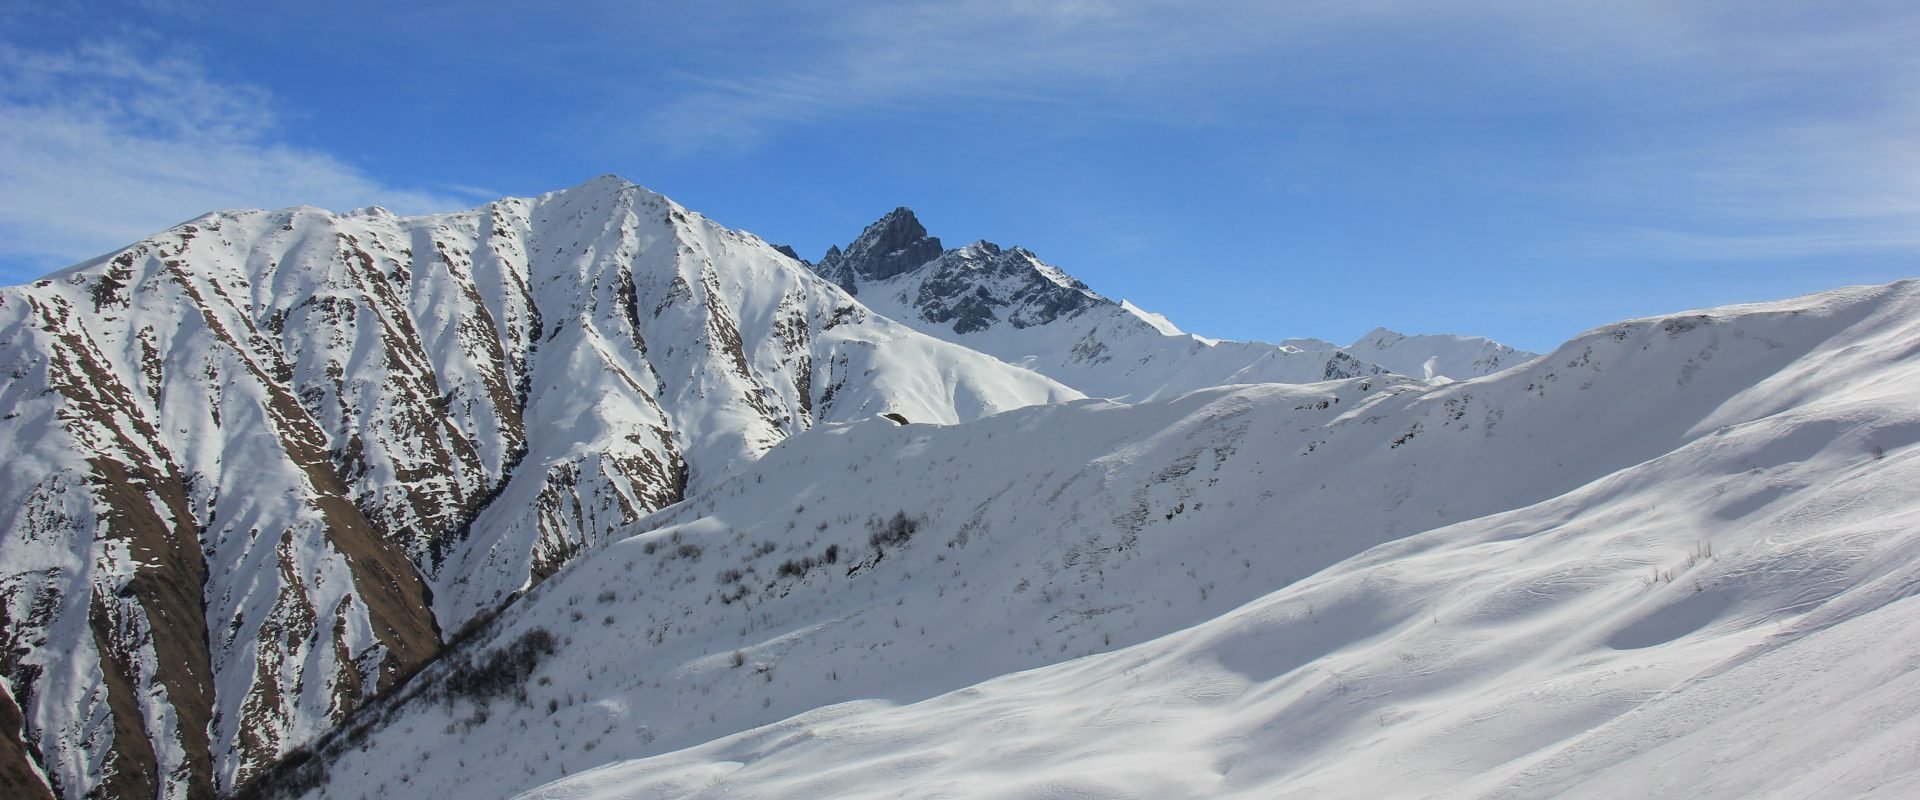 Ski de randonnée en Georgie avec Le massif du Chaukhi au fond